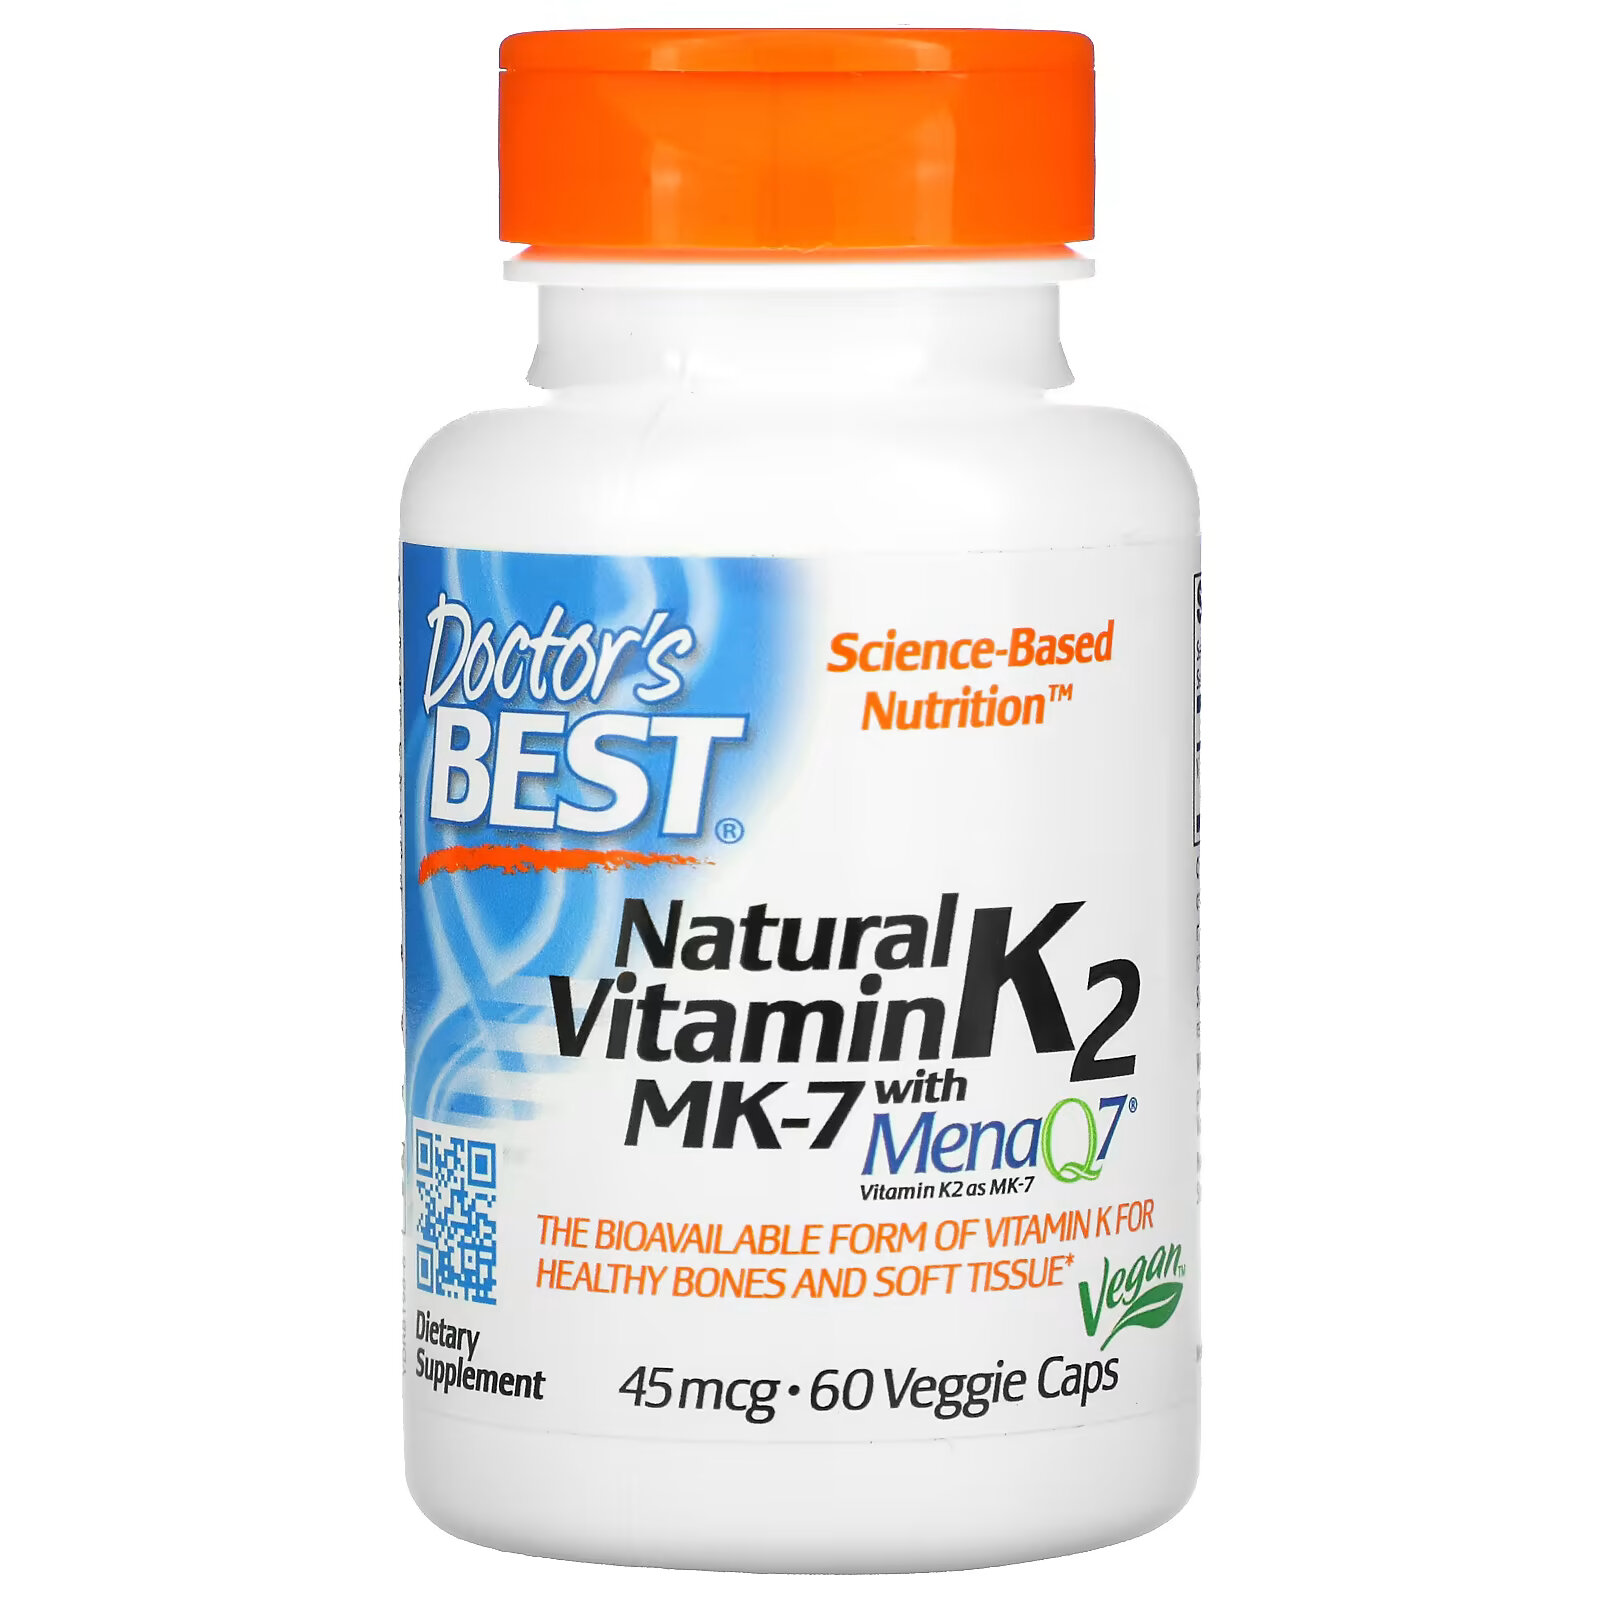 doctor s best витамин k2 mk 7 с menaq7 45 мкг 60 вегетарианских капсул Doctor's Best витамин K2 MK-7 с MenaQ7, 45 мкг, 60 вегетарианских капсул